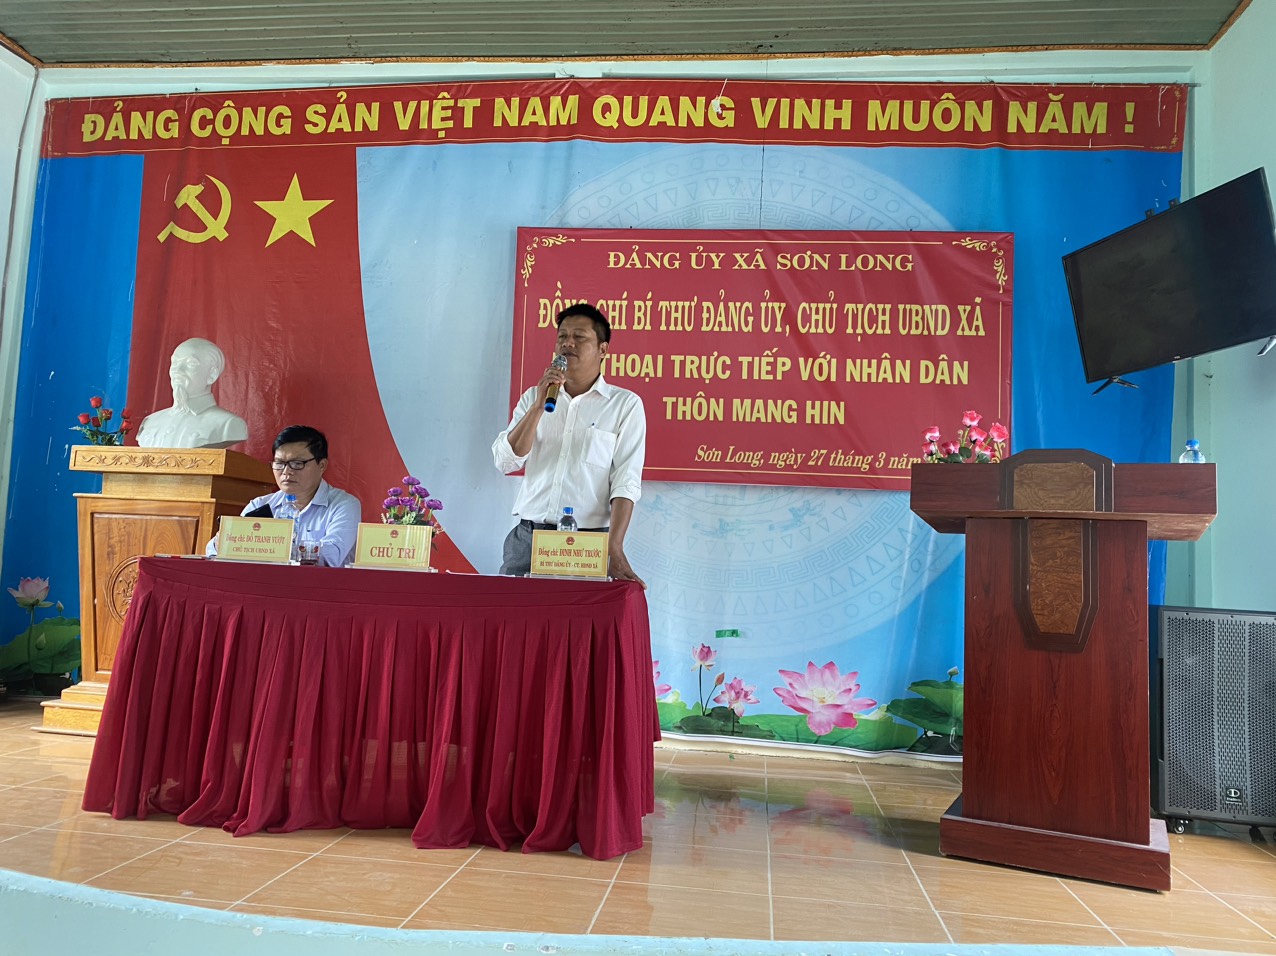 Sáng ngày 27/3/2024 Đảng ủy xã Sơn Long tổ chức hội nghị Bí thư Đảng ủy, chủ tịch UBND xã tiếp xúc, đối thoại trực tiếp với nhân dân thôn mang Hin.